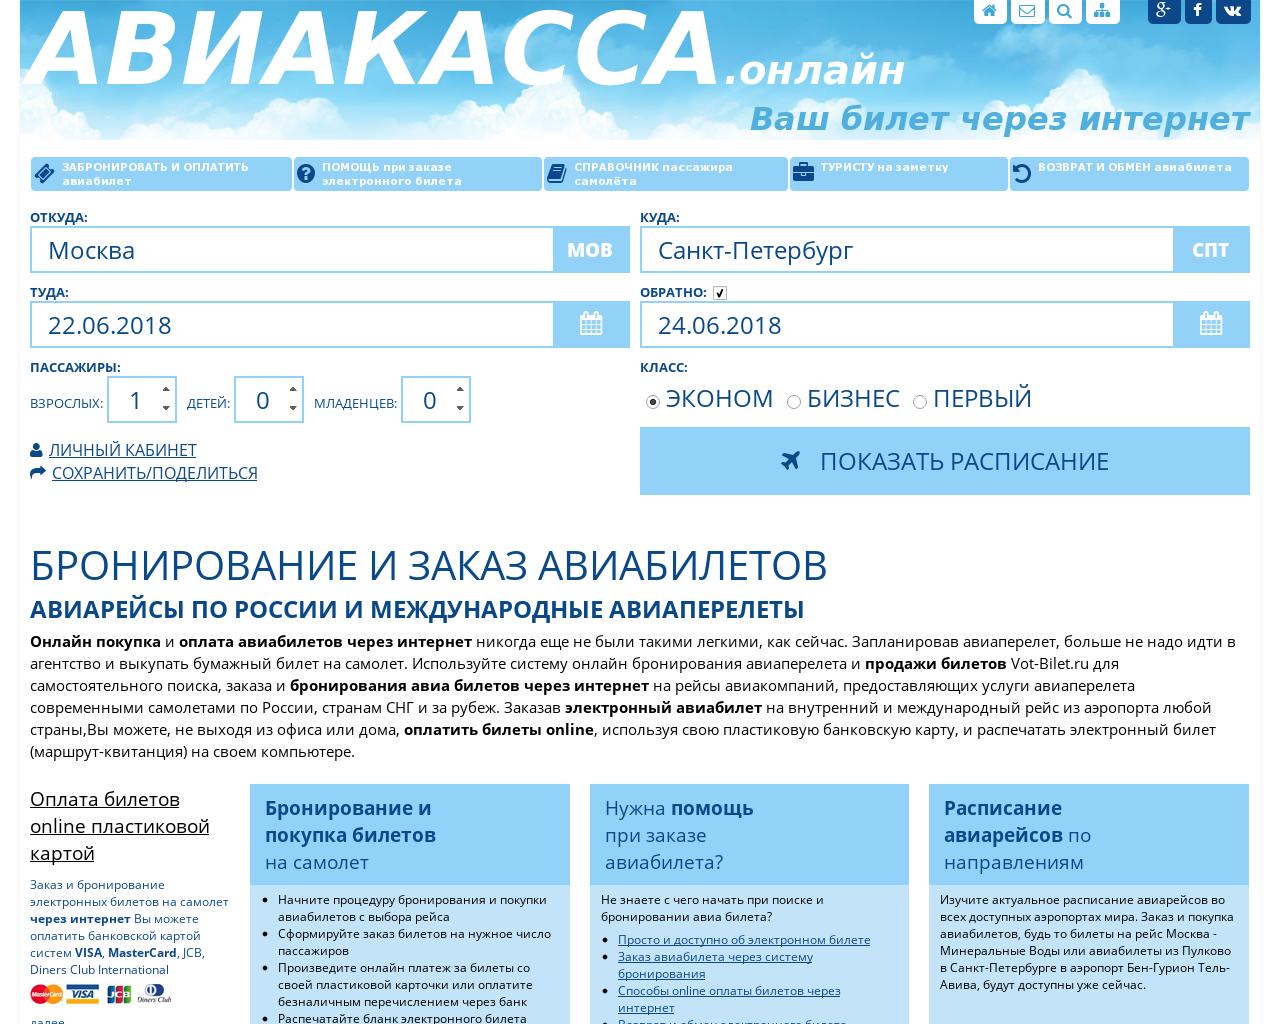 Изображение сайта vot-bilet.ru в разрешении 1280x1024